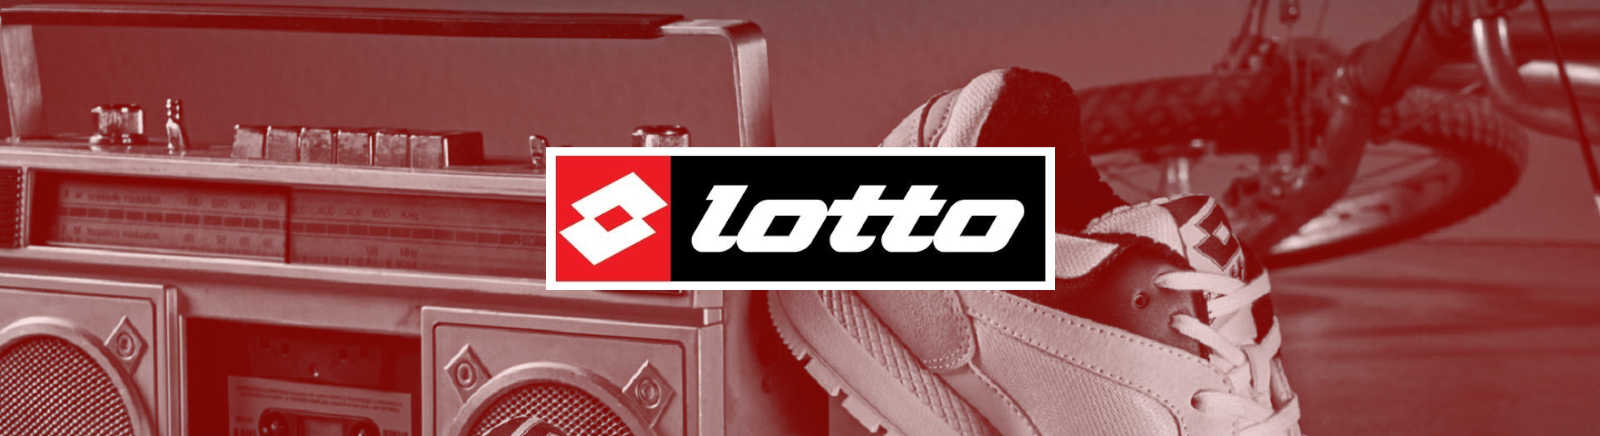 Lotto Herrenschuhe online kaufen bei Juppen